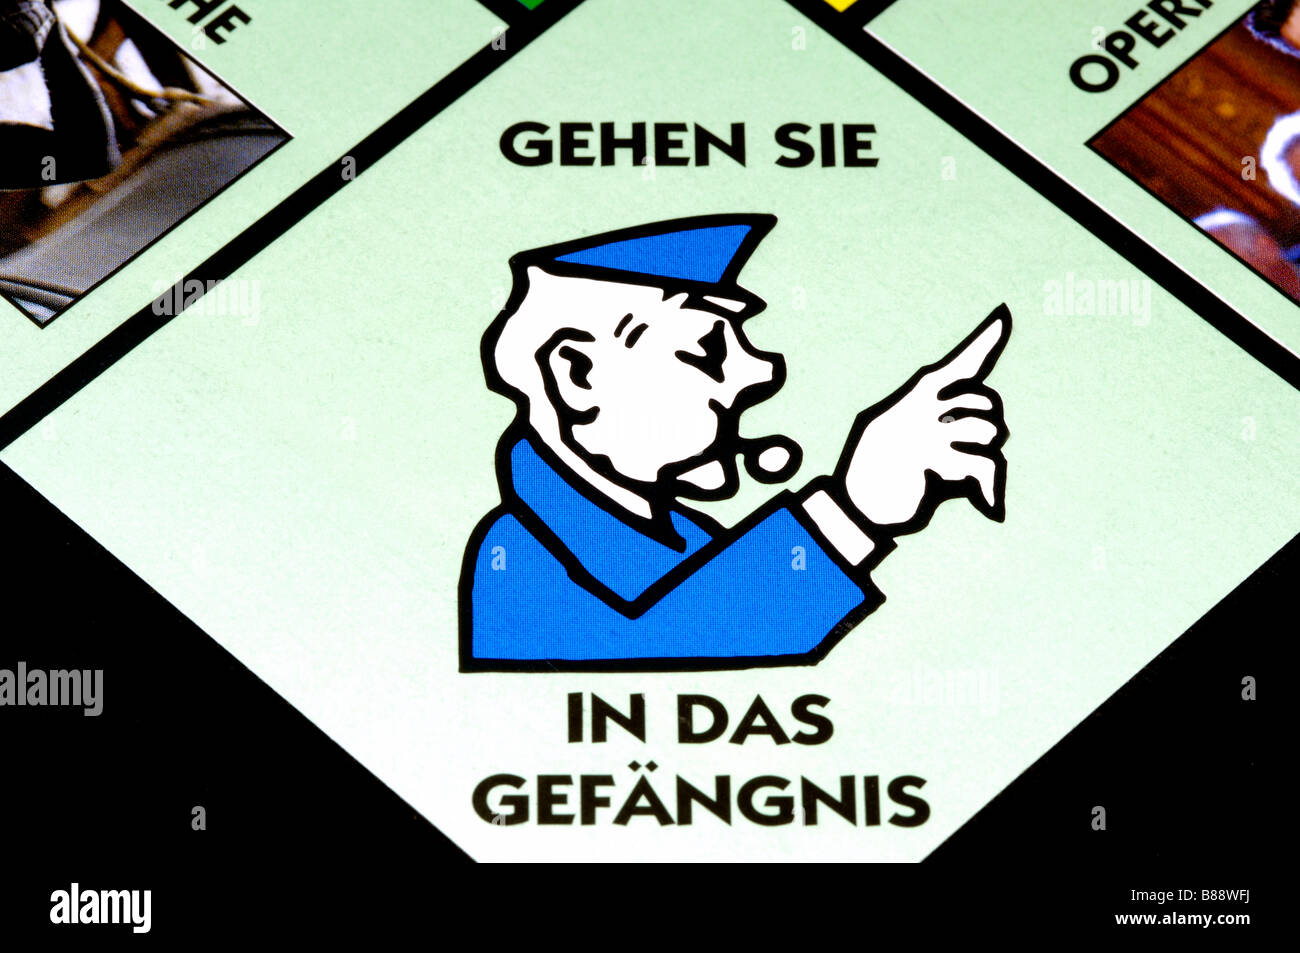 gehen sie in das gefängnis monopoly german go straight to jail deutschland polizei police crime criminal prison Stock Photo